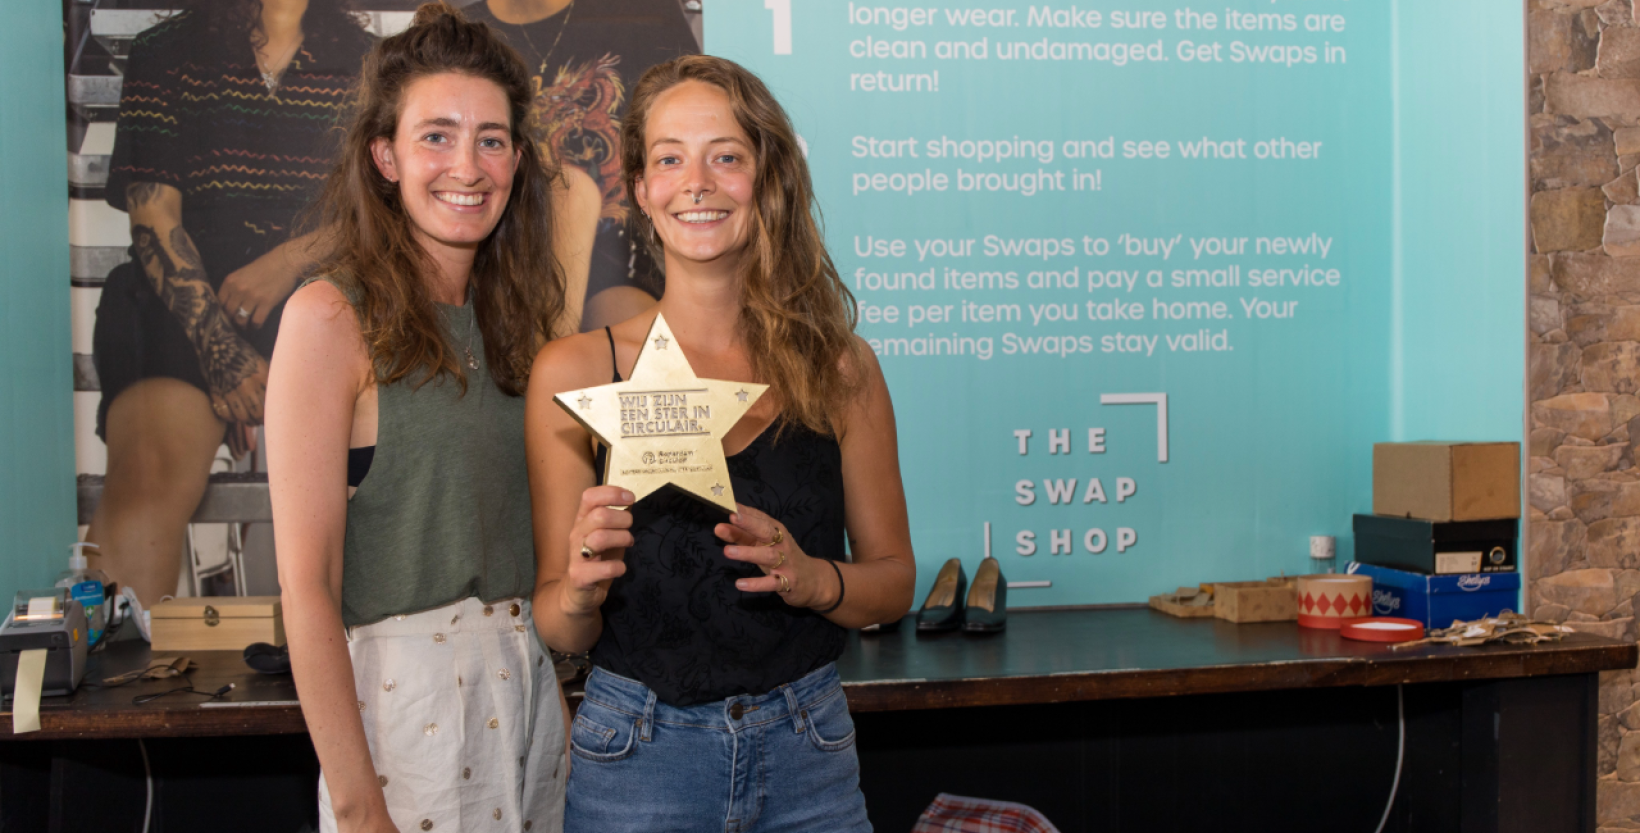 Op de foto de initiatiefnemers van The Swapshop. De persoon rechts houdt een award beet in de vorm van een ster, de Ster in Circulair.